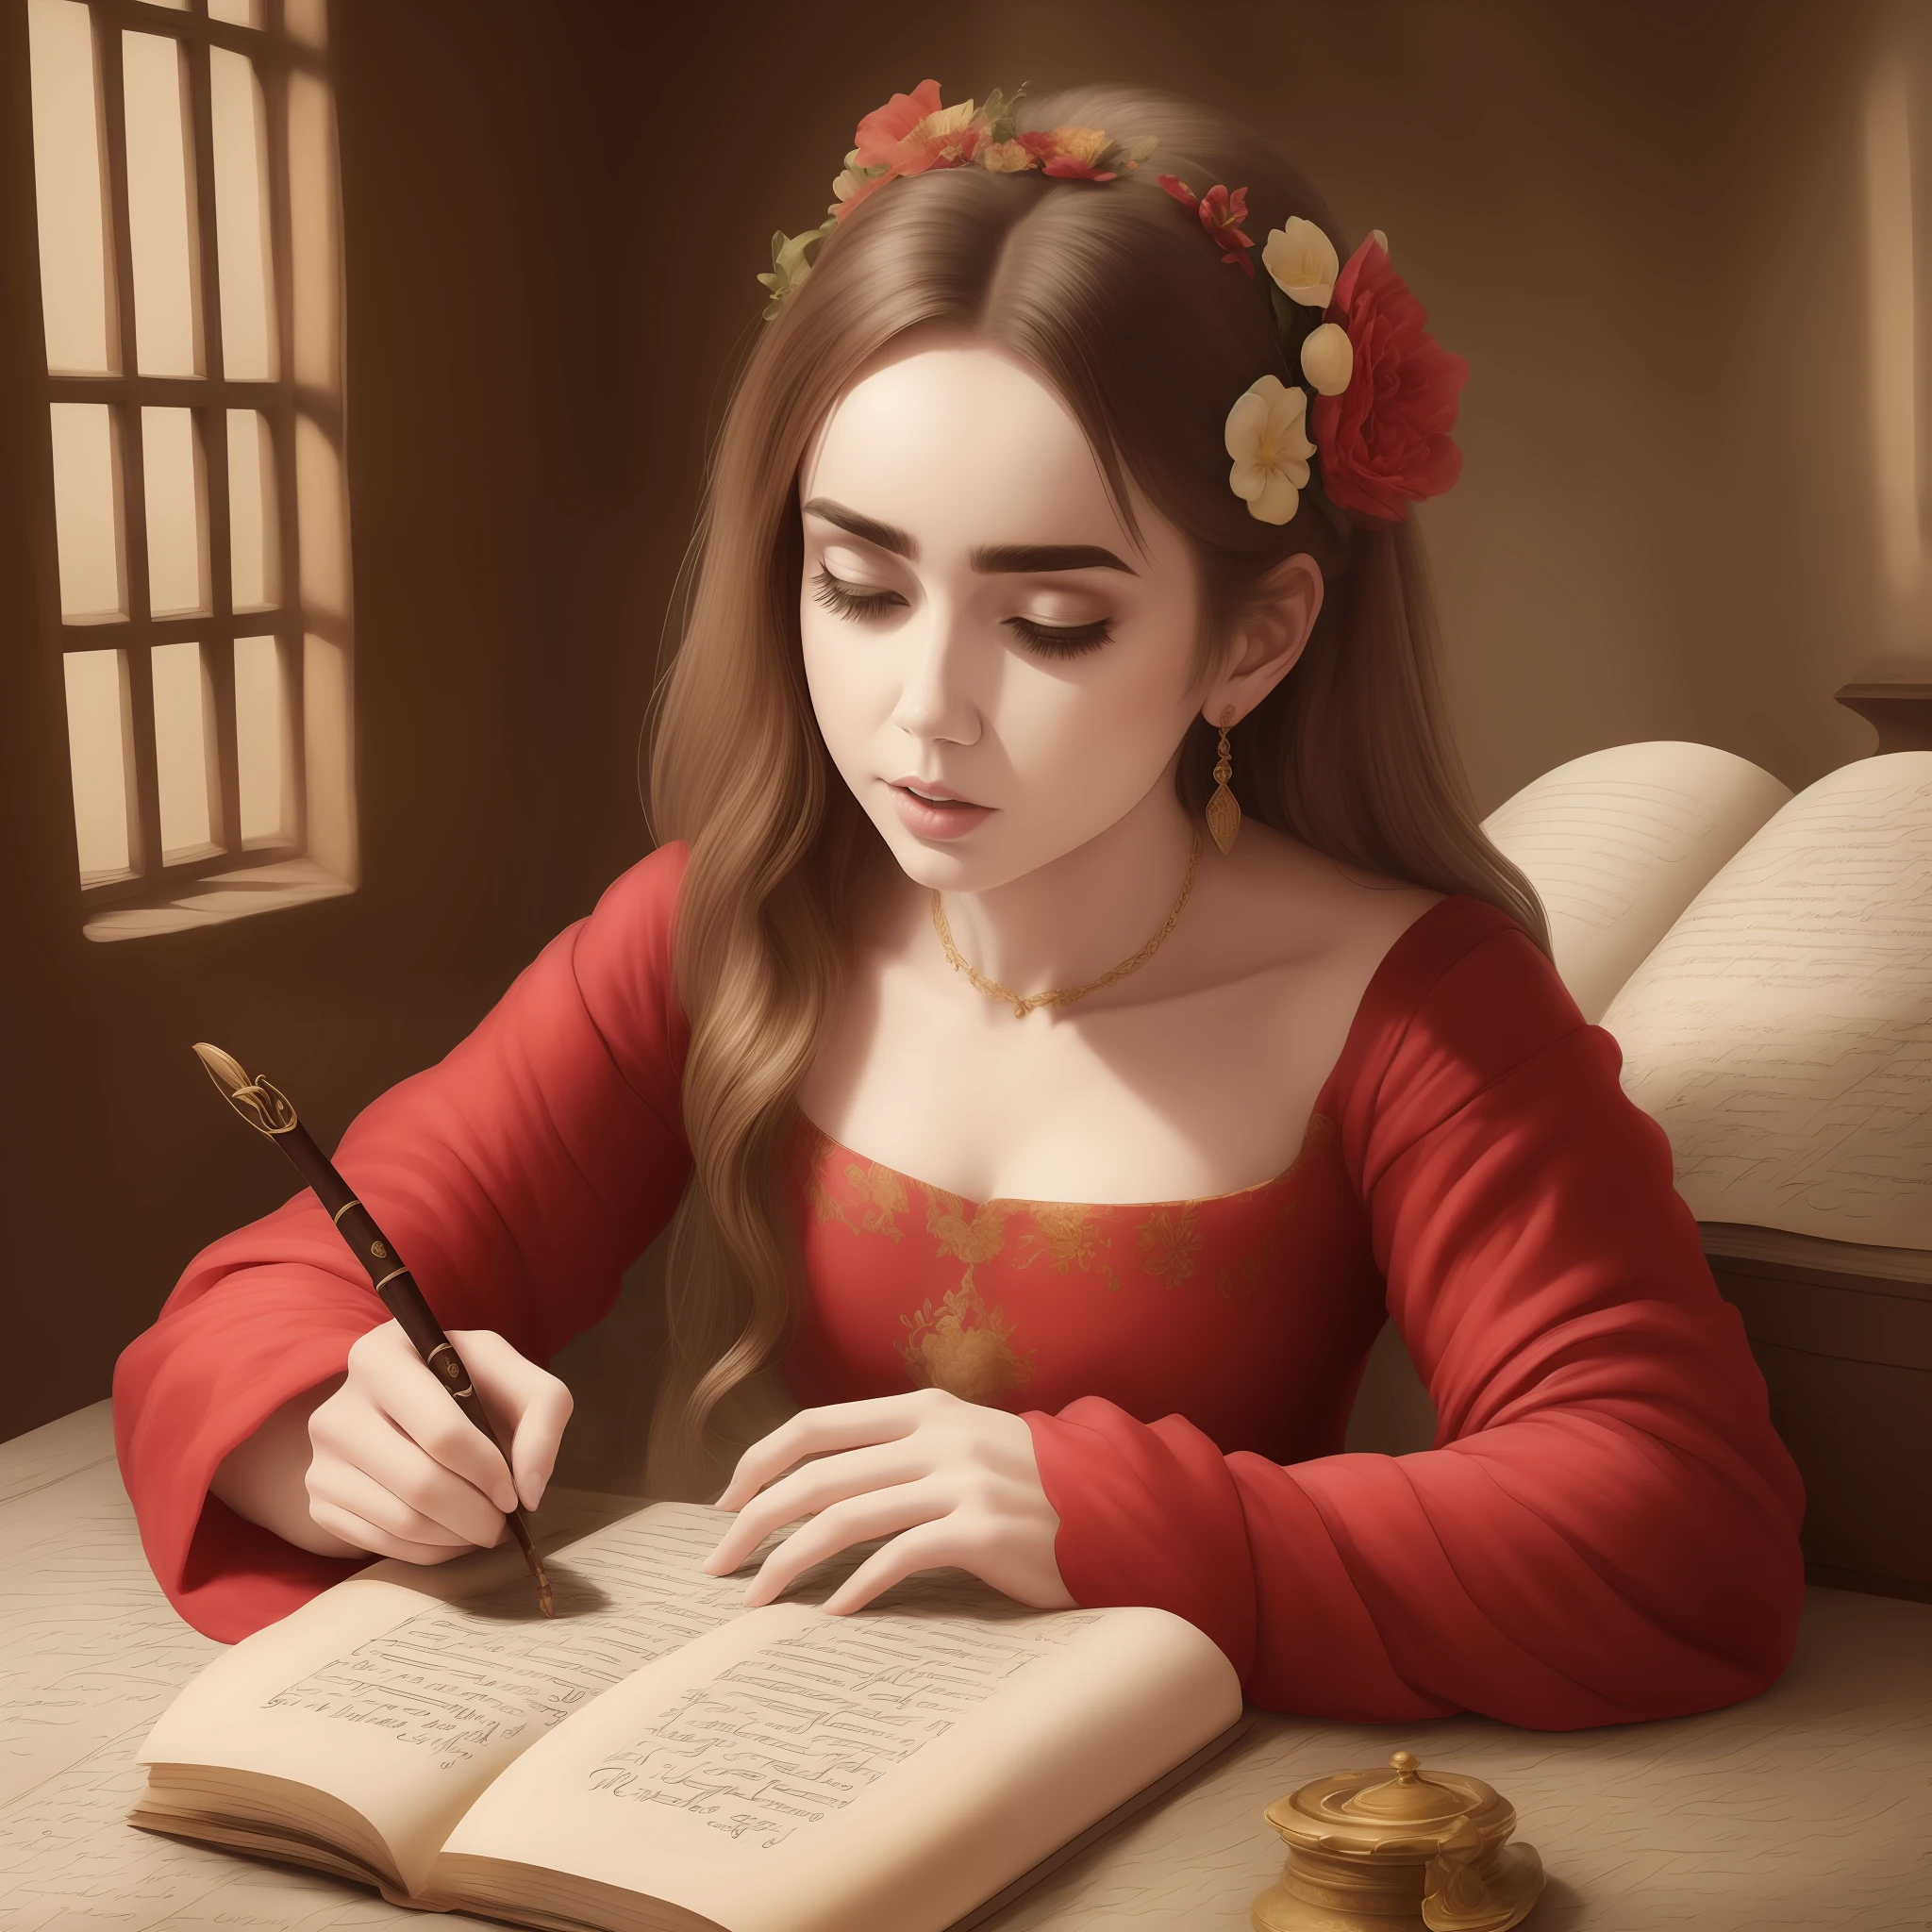 Lily Collins in mittelalterlicher Kleidung schreibt auf einem Pergament mit rotem Kleid und Tintenfass